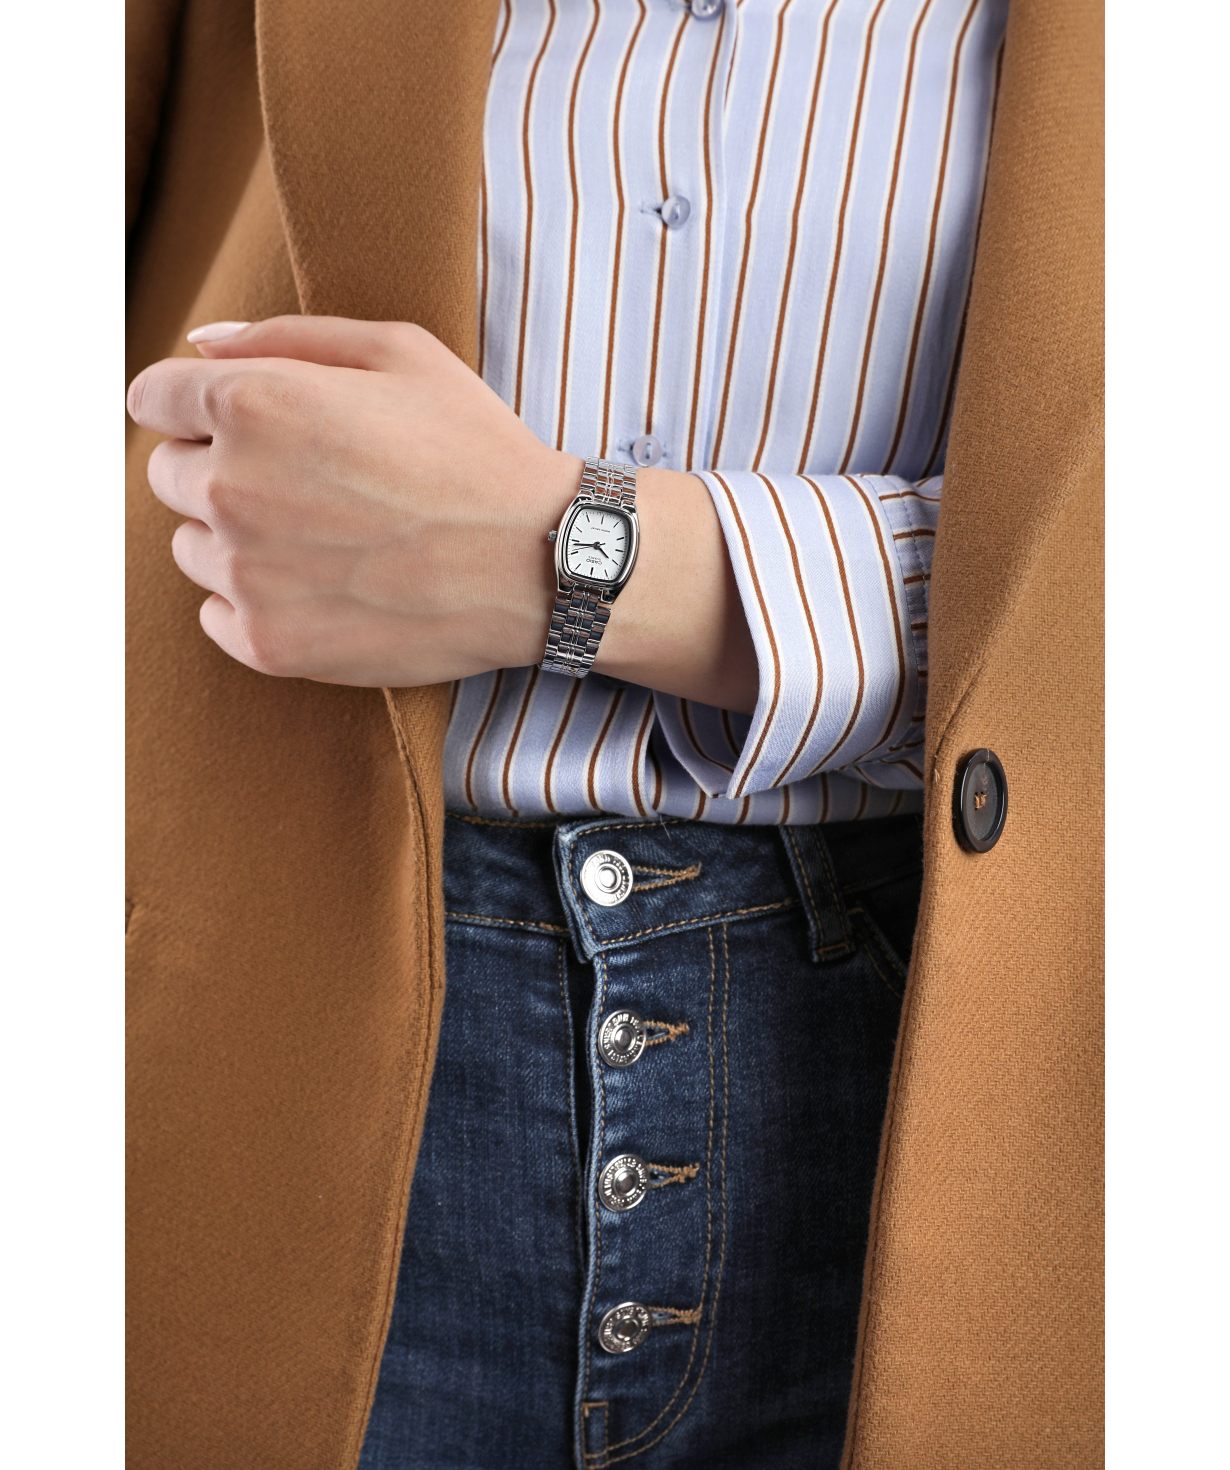 Wristwatch `Casio` LTP-1169D-7ARDF